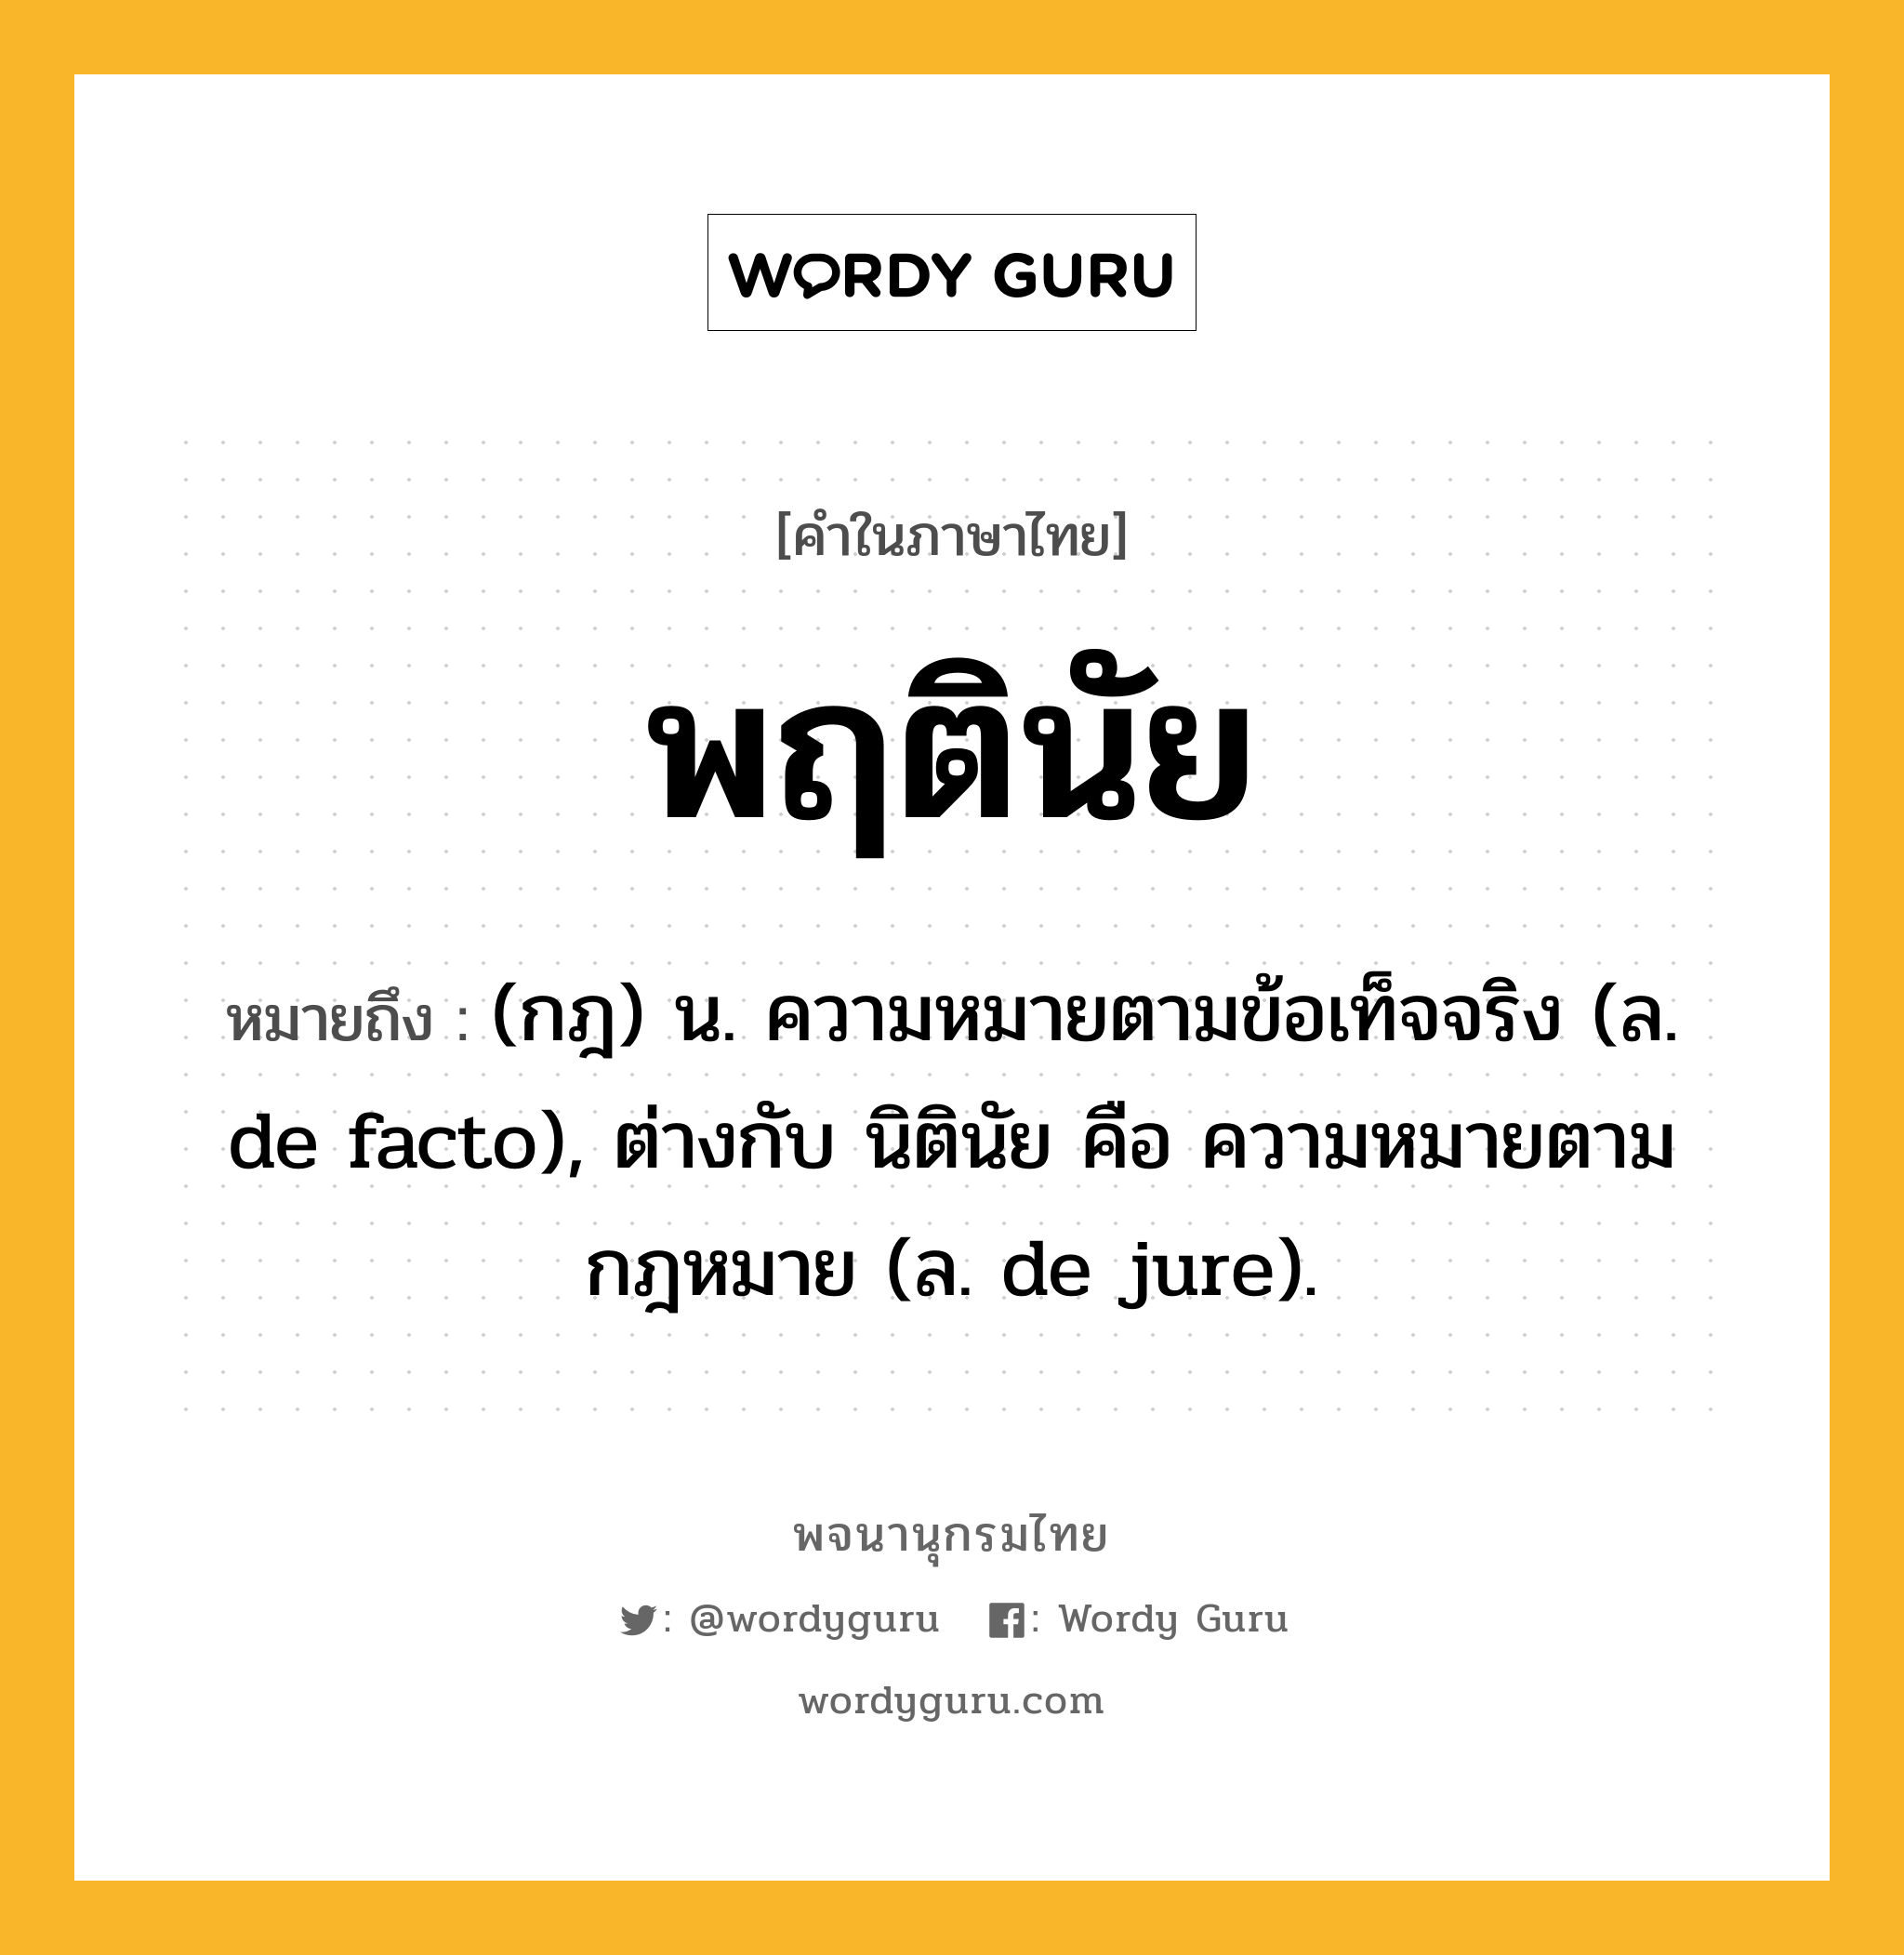 พฤตินัย หมายถึงอะไร?, คำในภาษาไทย พฤตินัย หมายถึง (กฎ) น. ความหมายตามข้อเท็จจริง (ล. de facto), ต่างกับ นิตินัย คือ ความหมายตามกฎหมาย (ล. de jure).